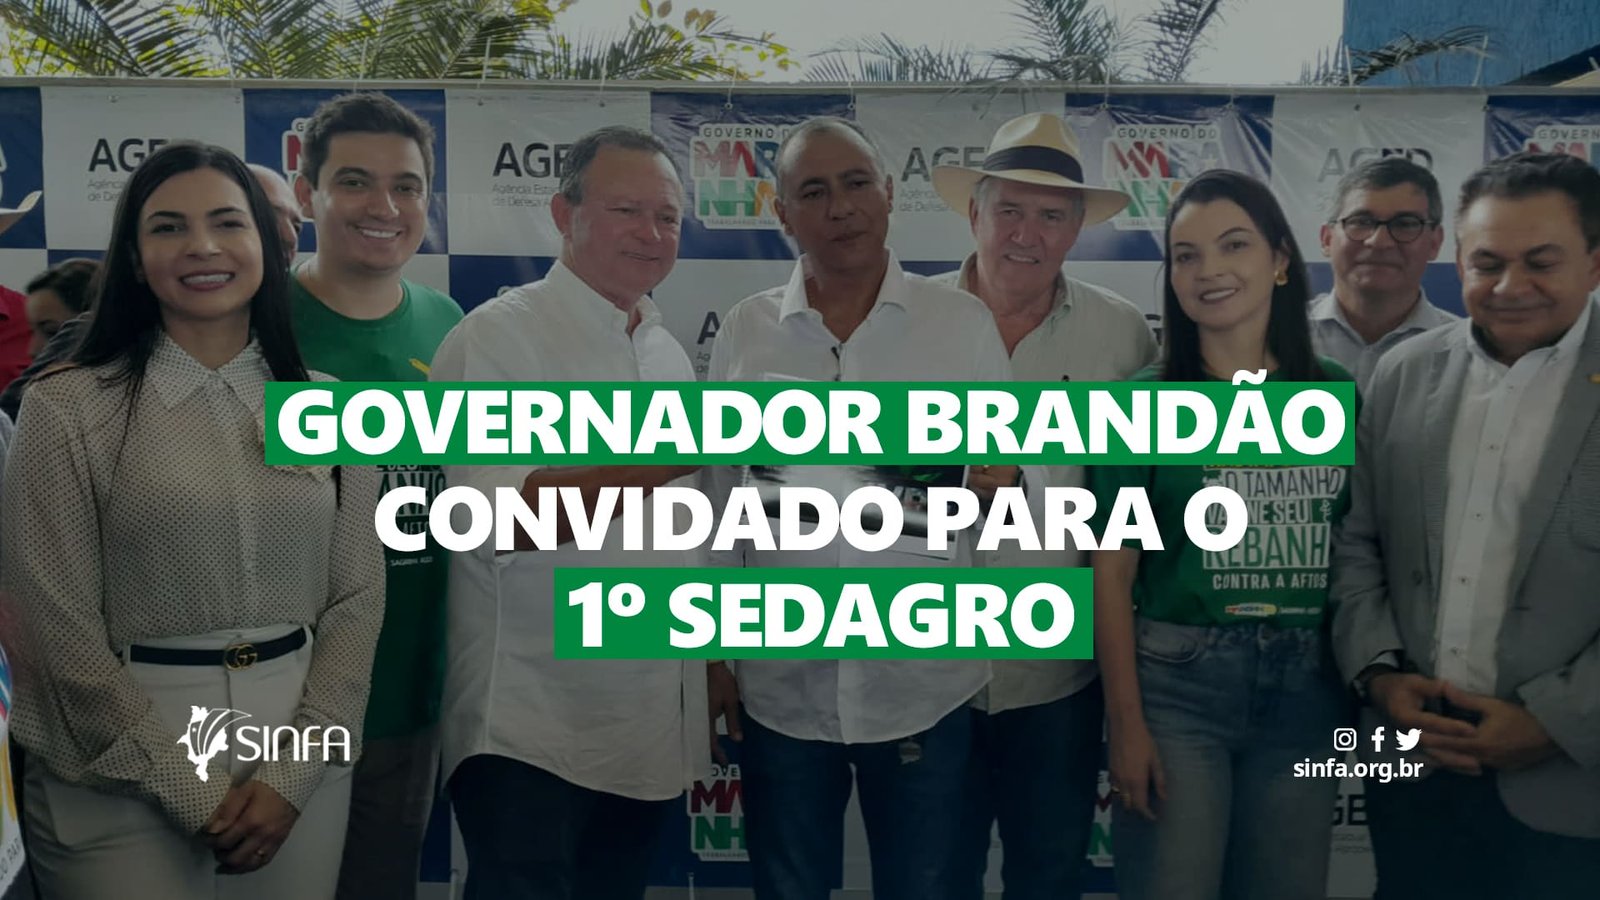 Governador Brandão convidado para o 1º SEDAGRO